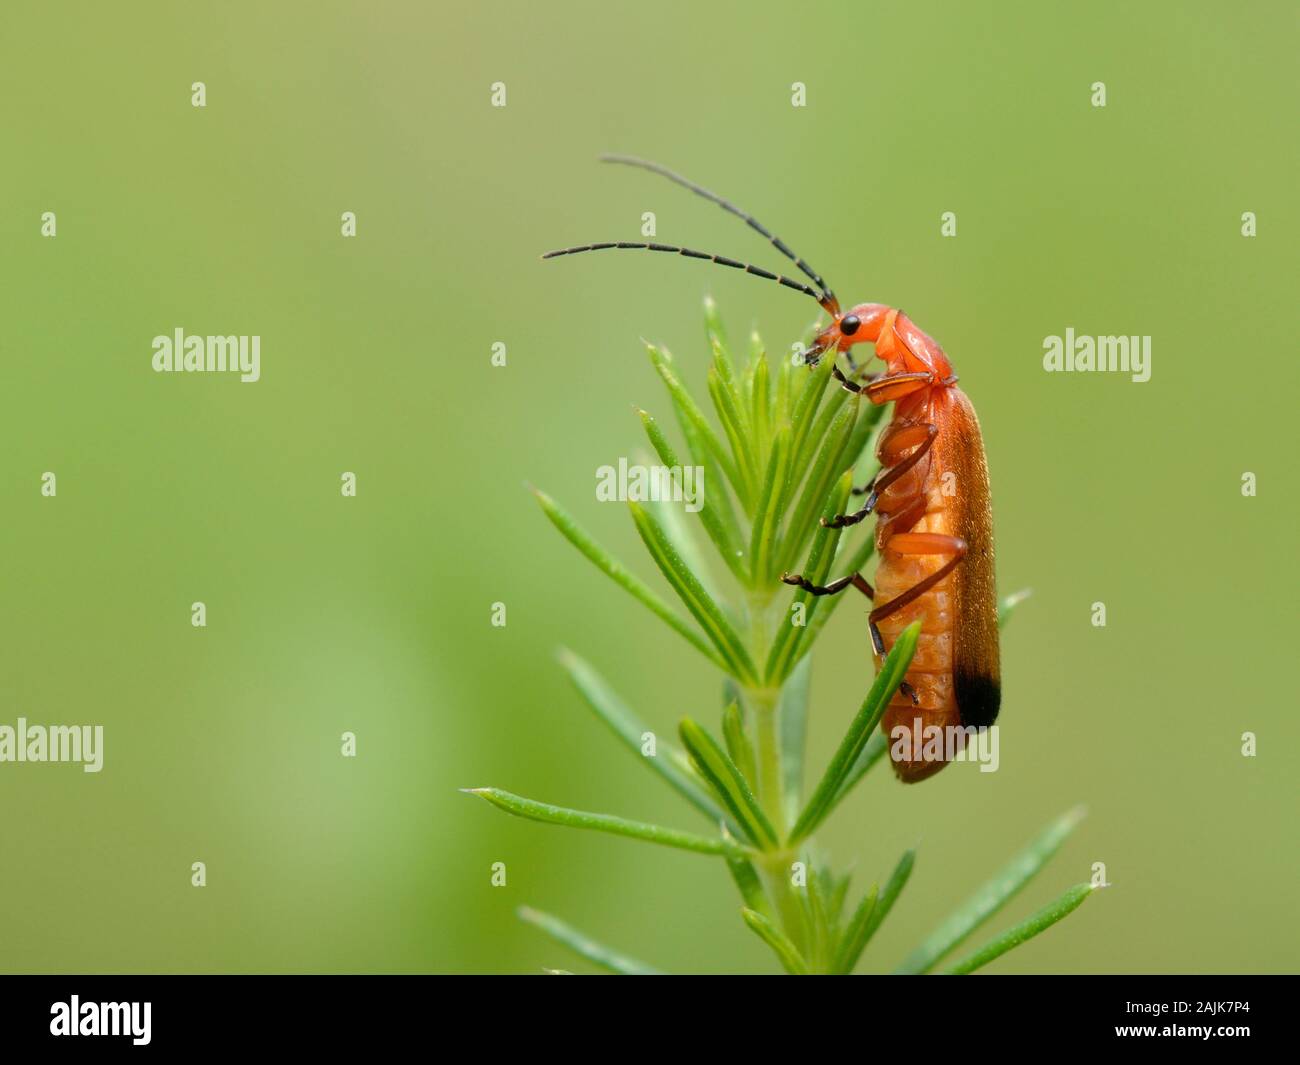 Soldat rouge commun beetle / soldat à bout noir beetle Rhagonycha fulva) (sur une oie / herbe gaillet gratteron (Galium aparine) Plante, Wiltshire, Royaume-Uni. Banque D'Images